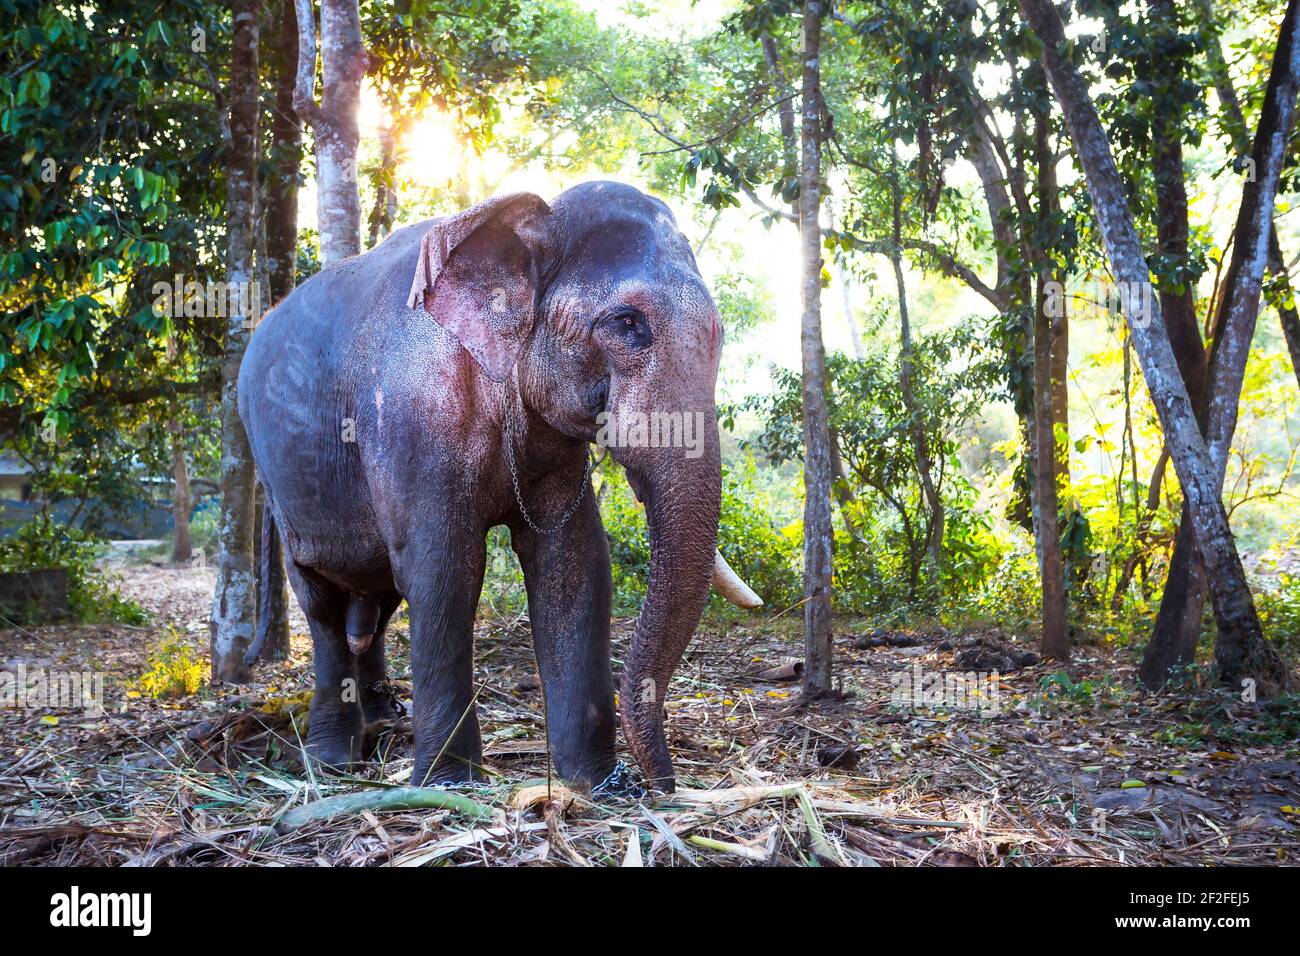 Elefante indiano nella giungla su una catena - intrattenimento per i turisti, duro lavoro sulla fattoria, equitazione, escursioni. Elefante nella foresta al sole Th Foto Stock